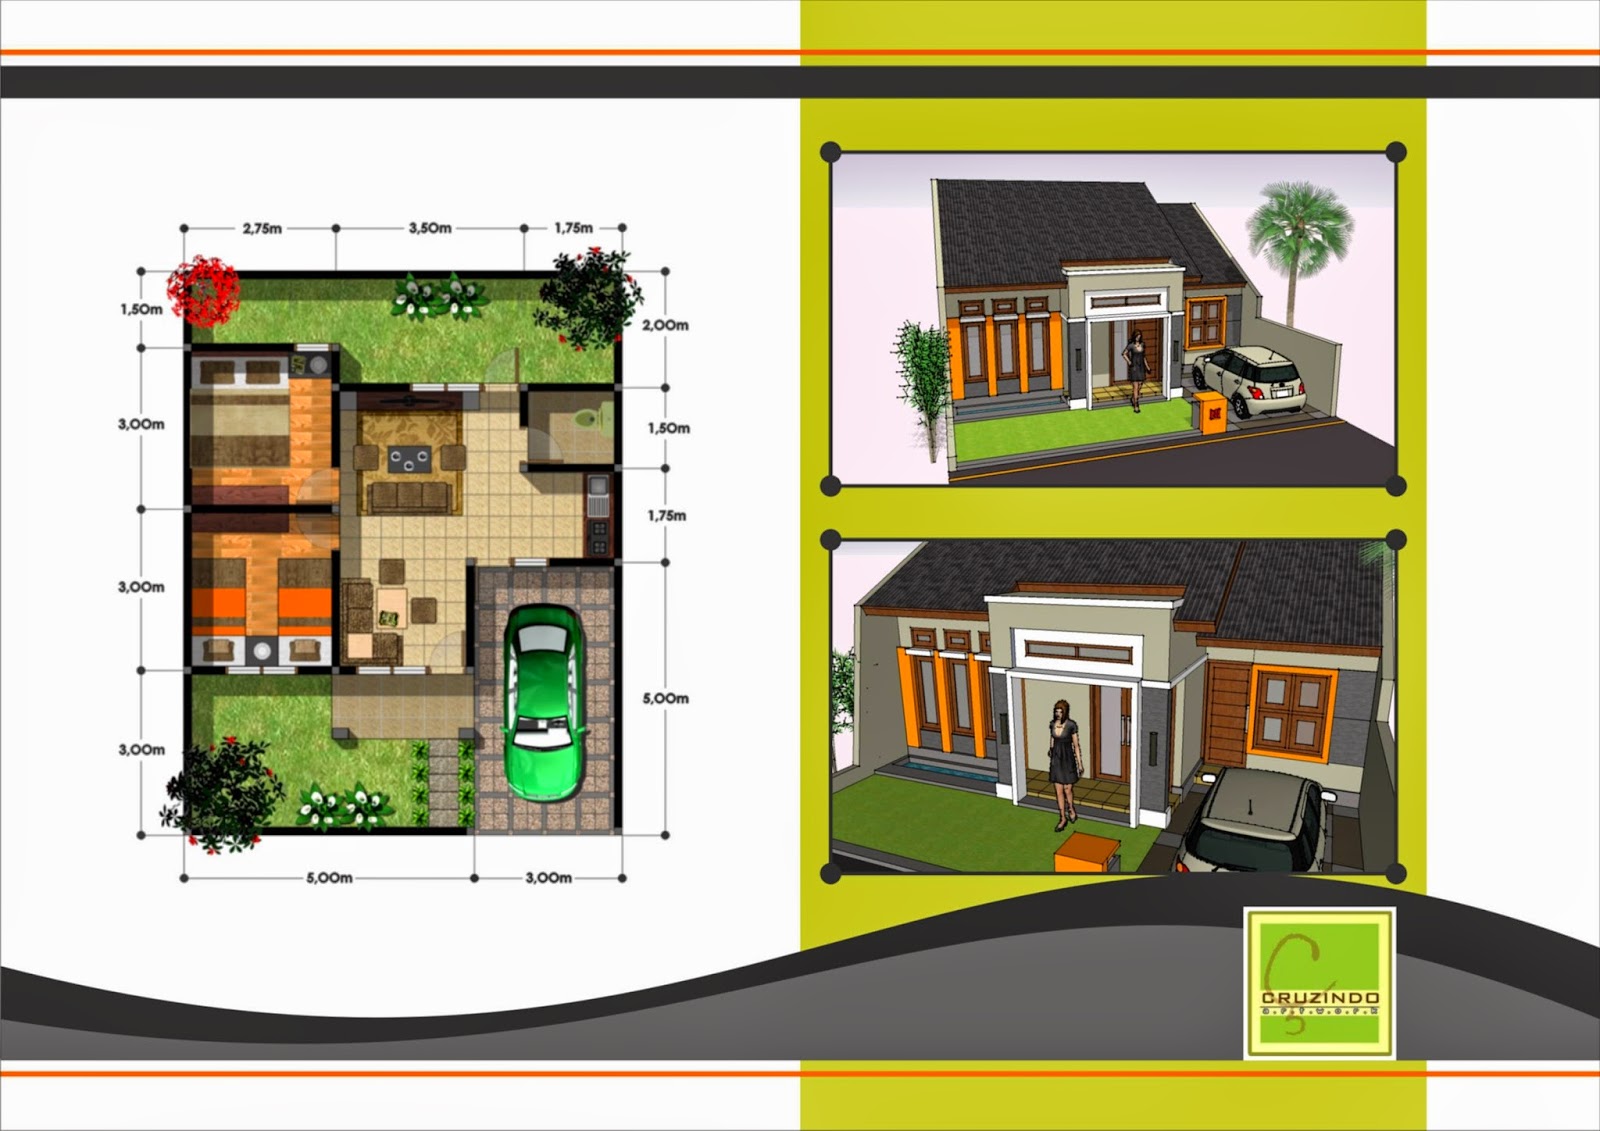 Gambar Terbaru Desain Rumah Minimalis 1 Lantai 2015 Neodamail